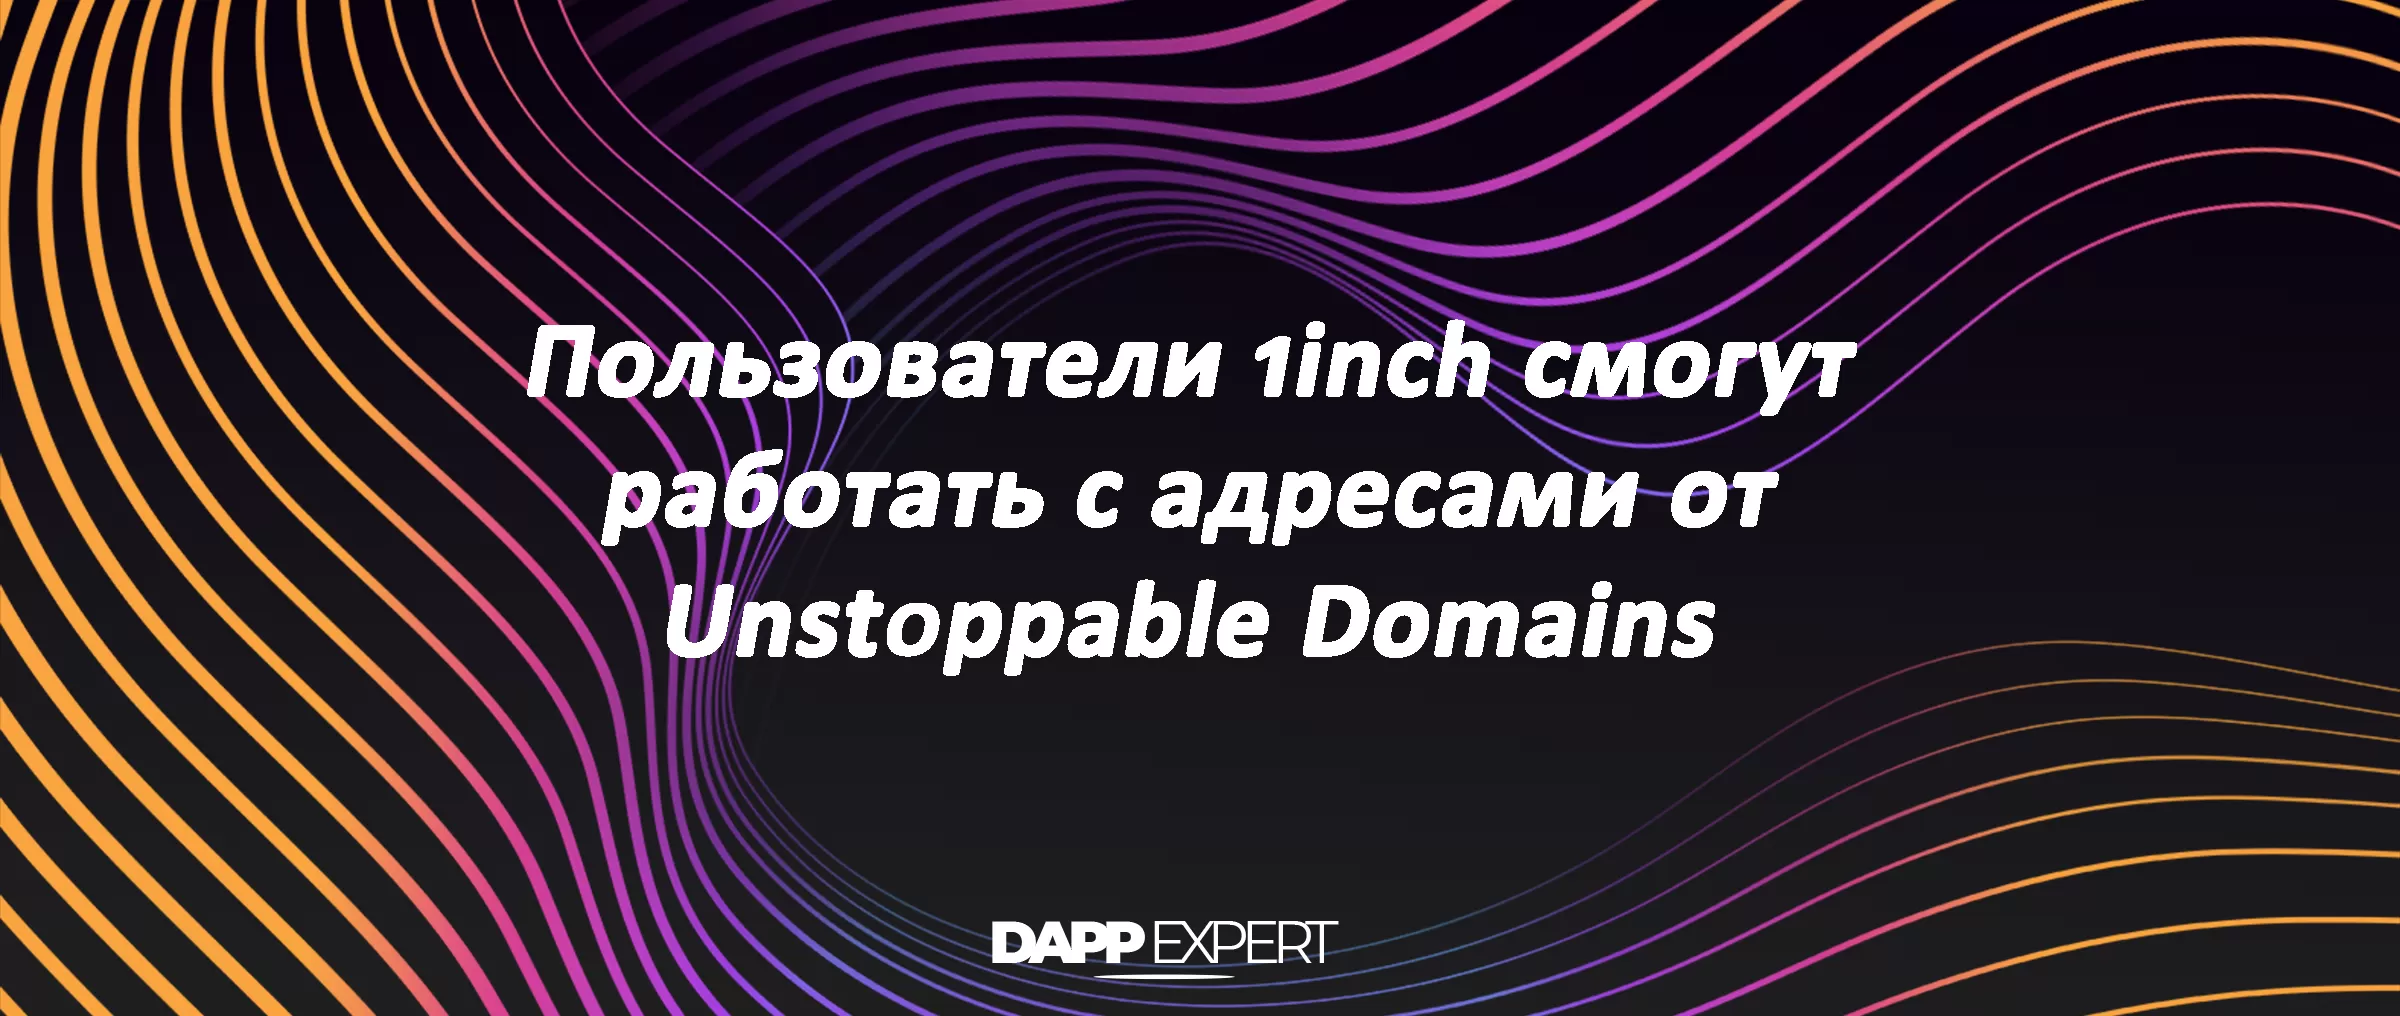 Пользователи 1inch смогут работать с доменами от Unstoppable Domains